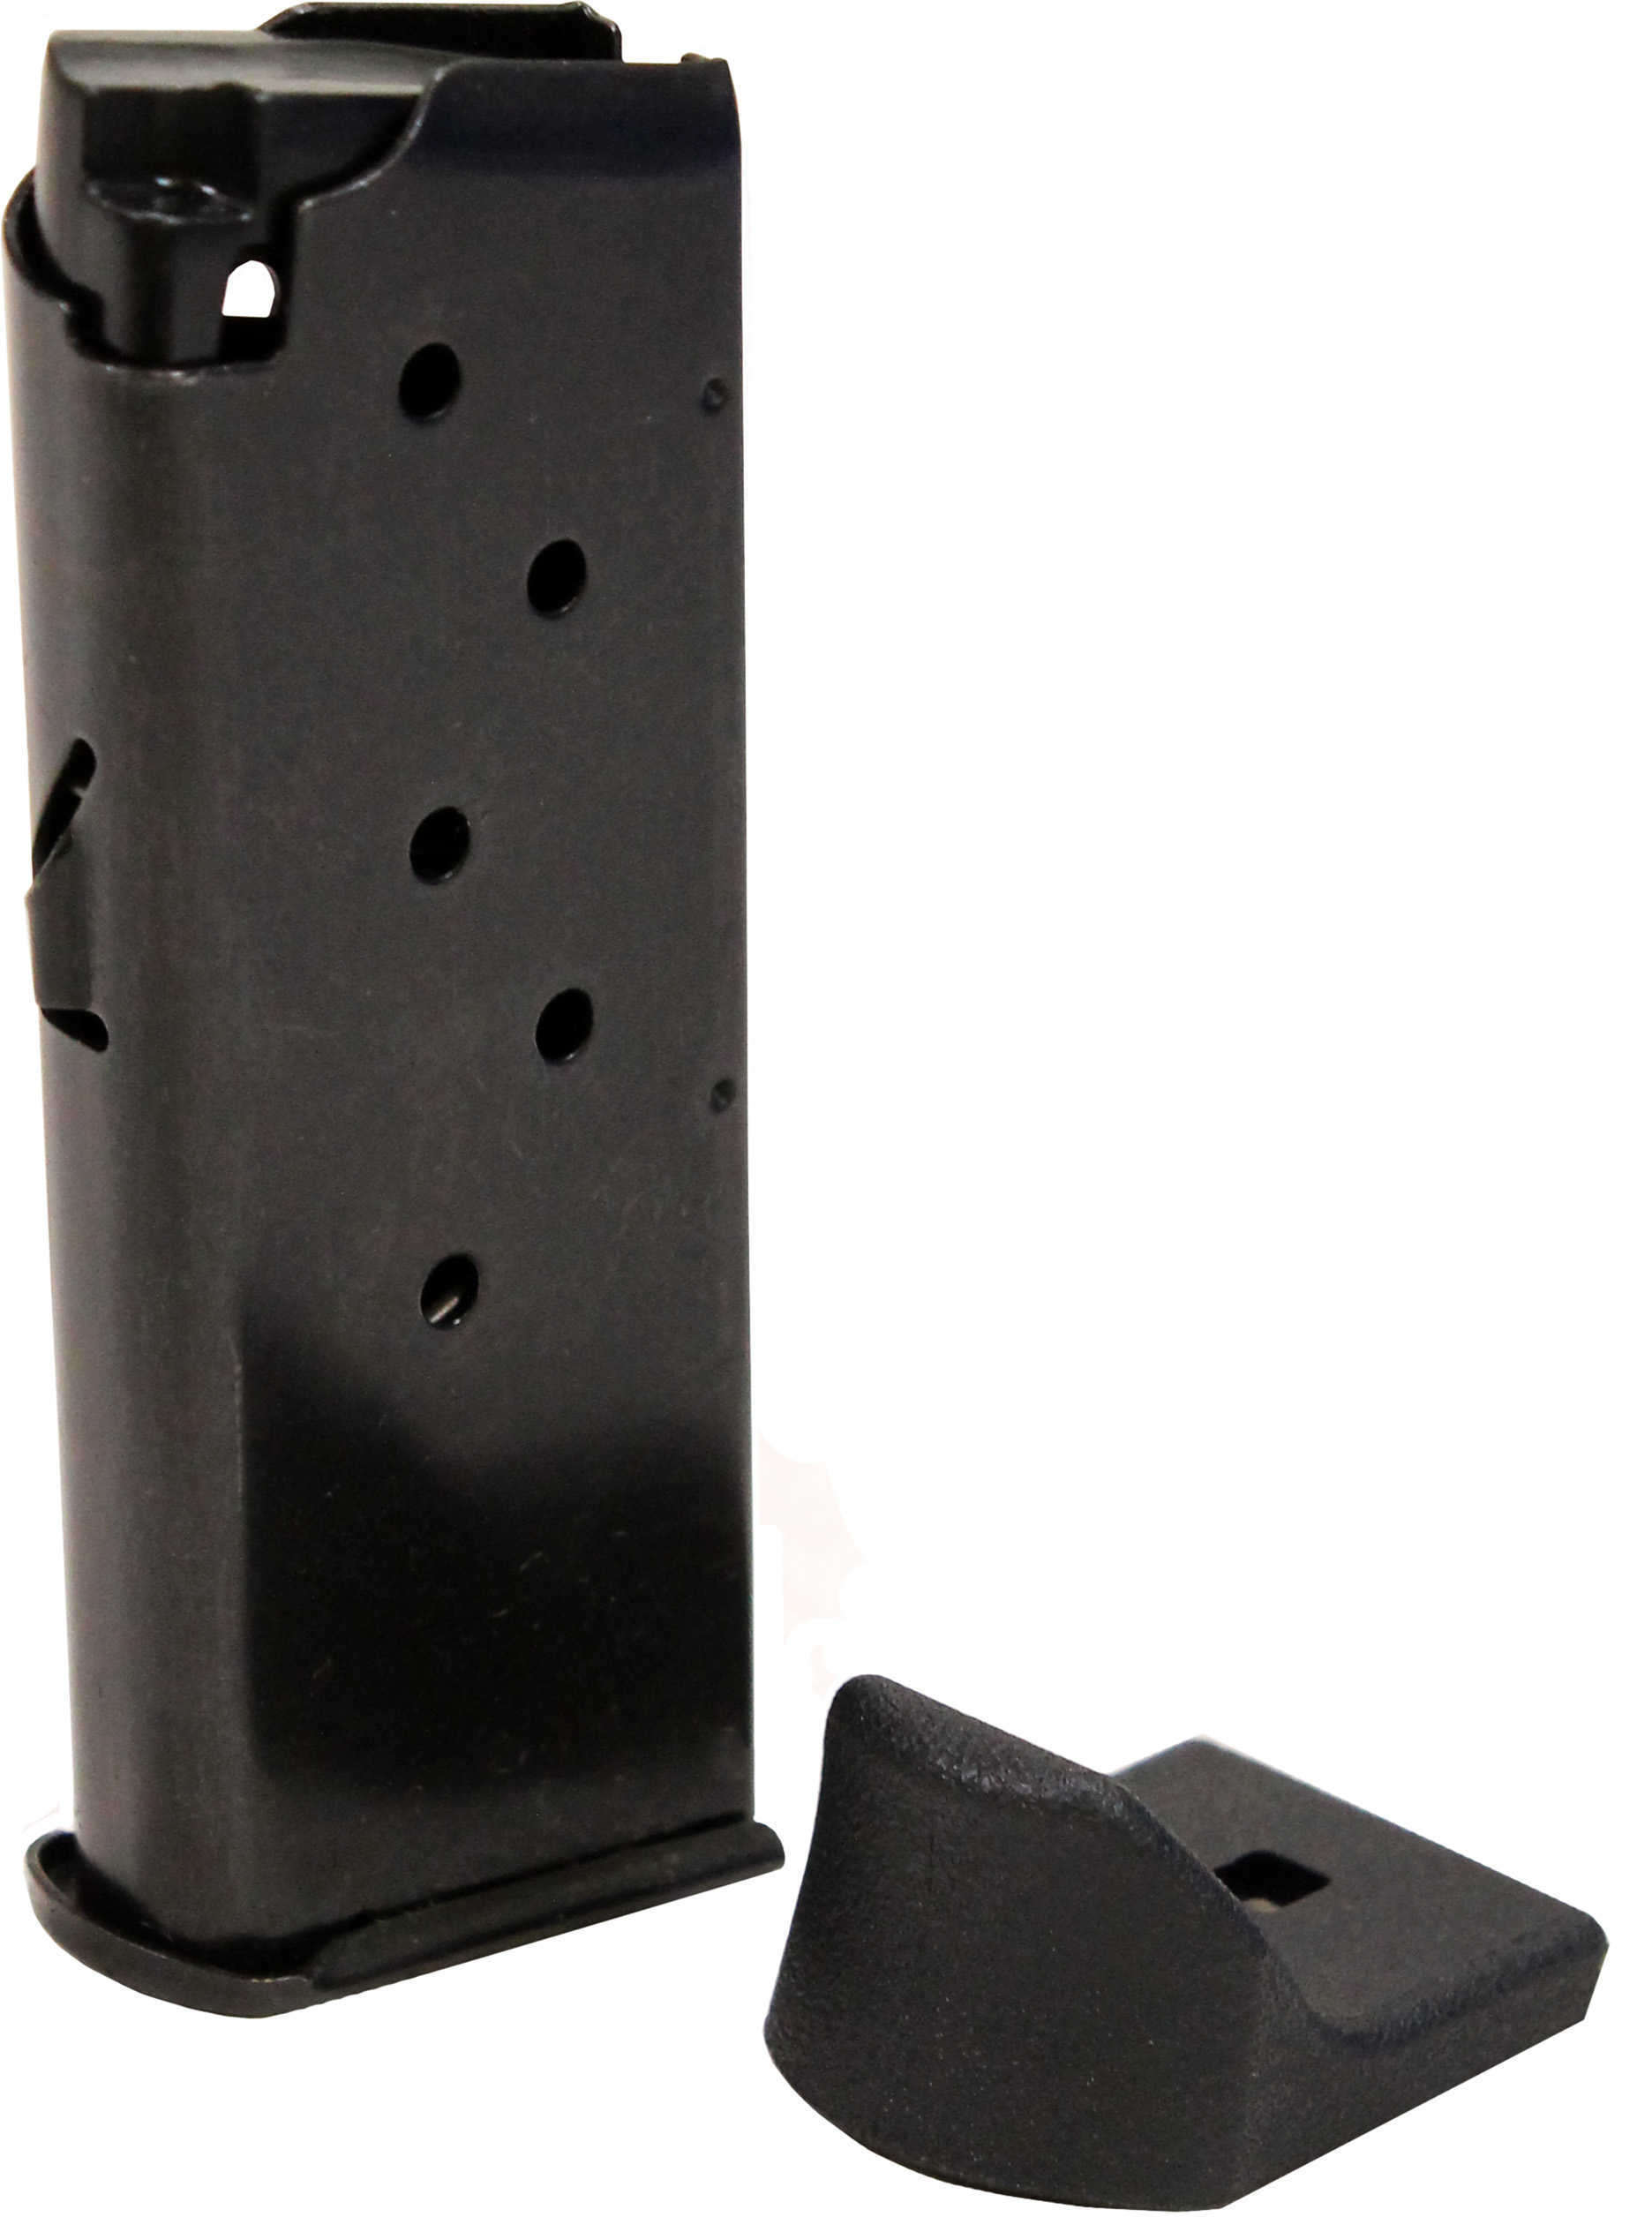 Remington Accessories 17679 RM380 380 Automatic Colt Pistol ( ACP ) 7 rd Black Finish